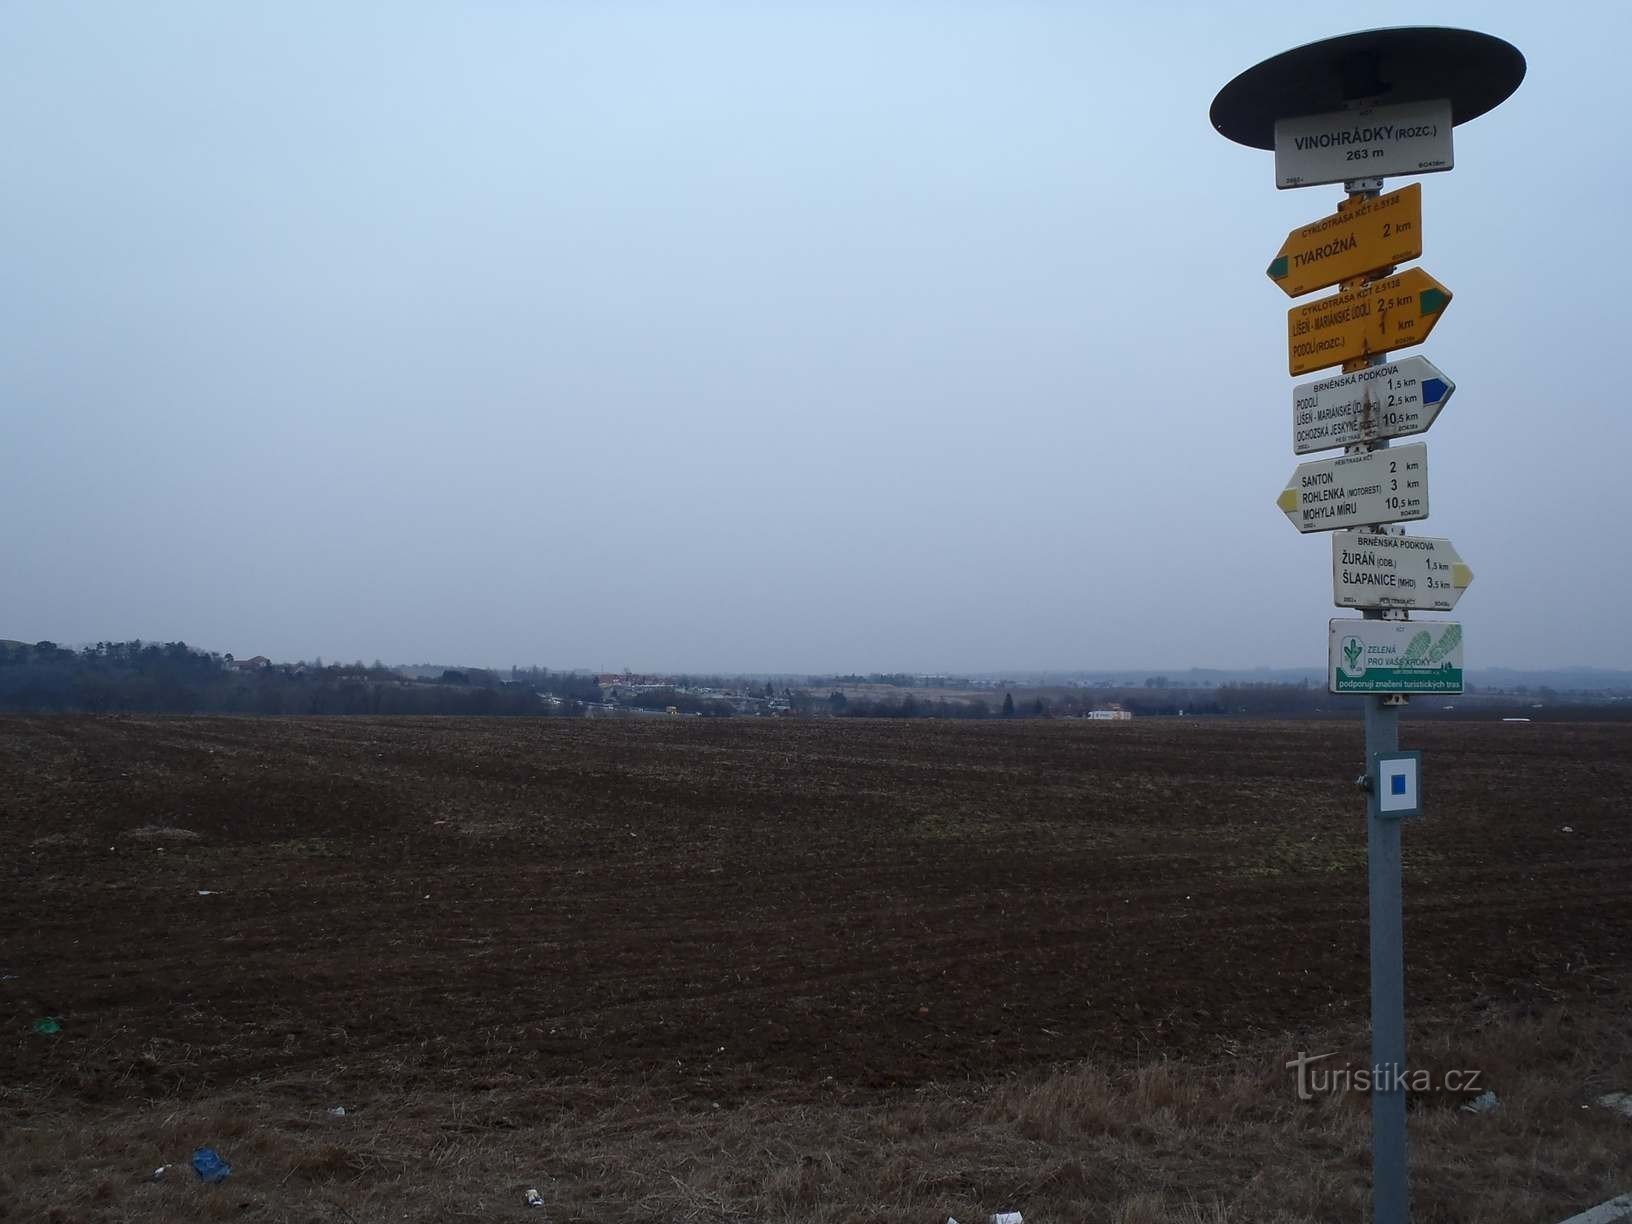 Widok z Vinohradky na park motorowy Rohlenka - 6.2.2012 lutego XNUMX r